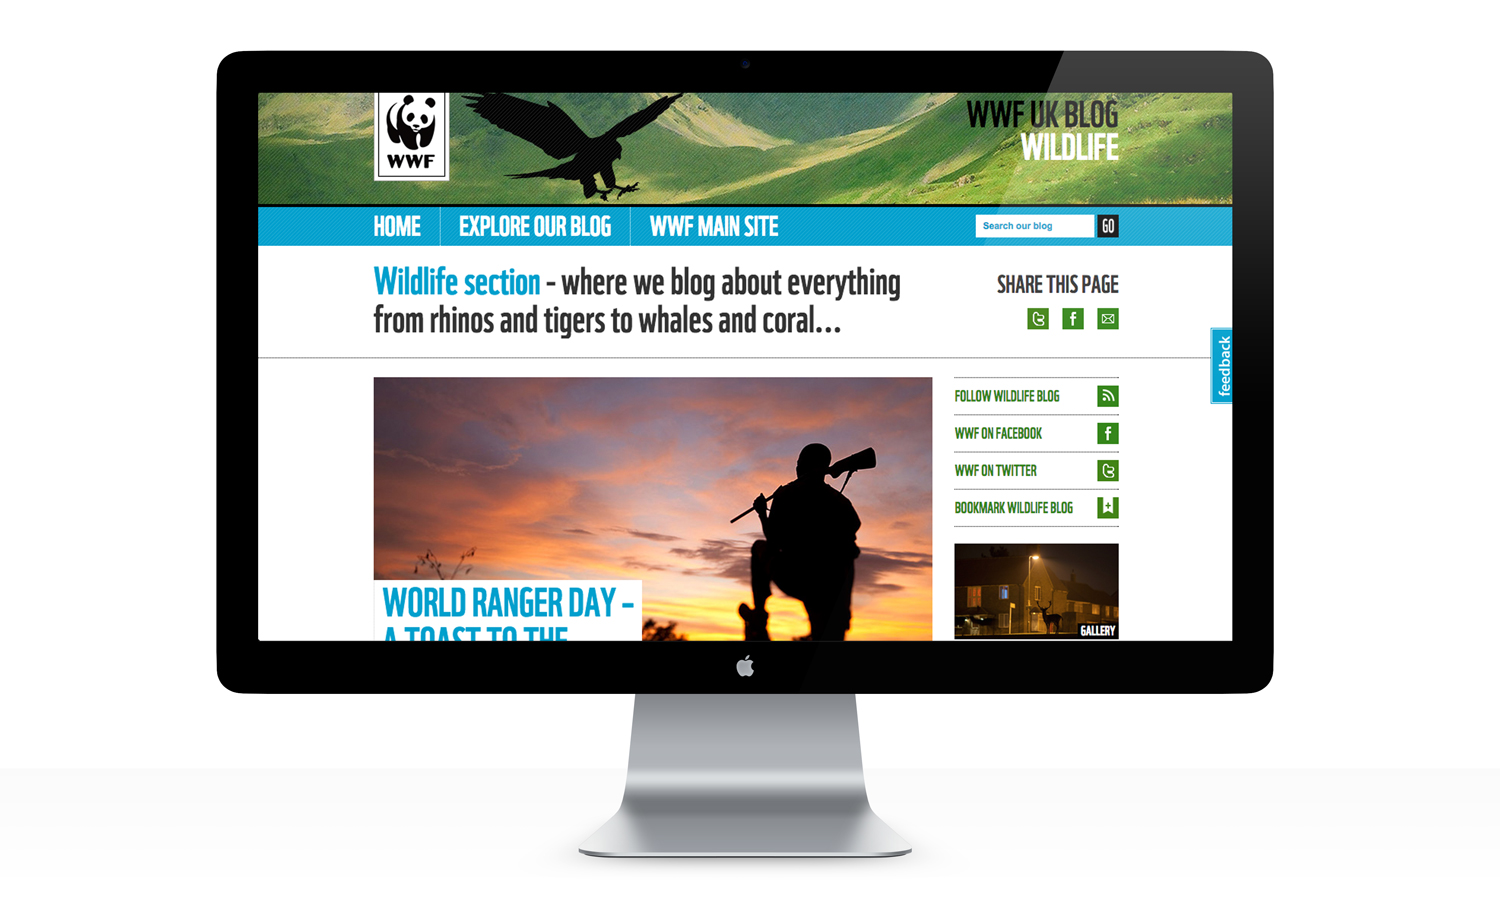 WWF UK Blog